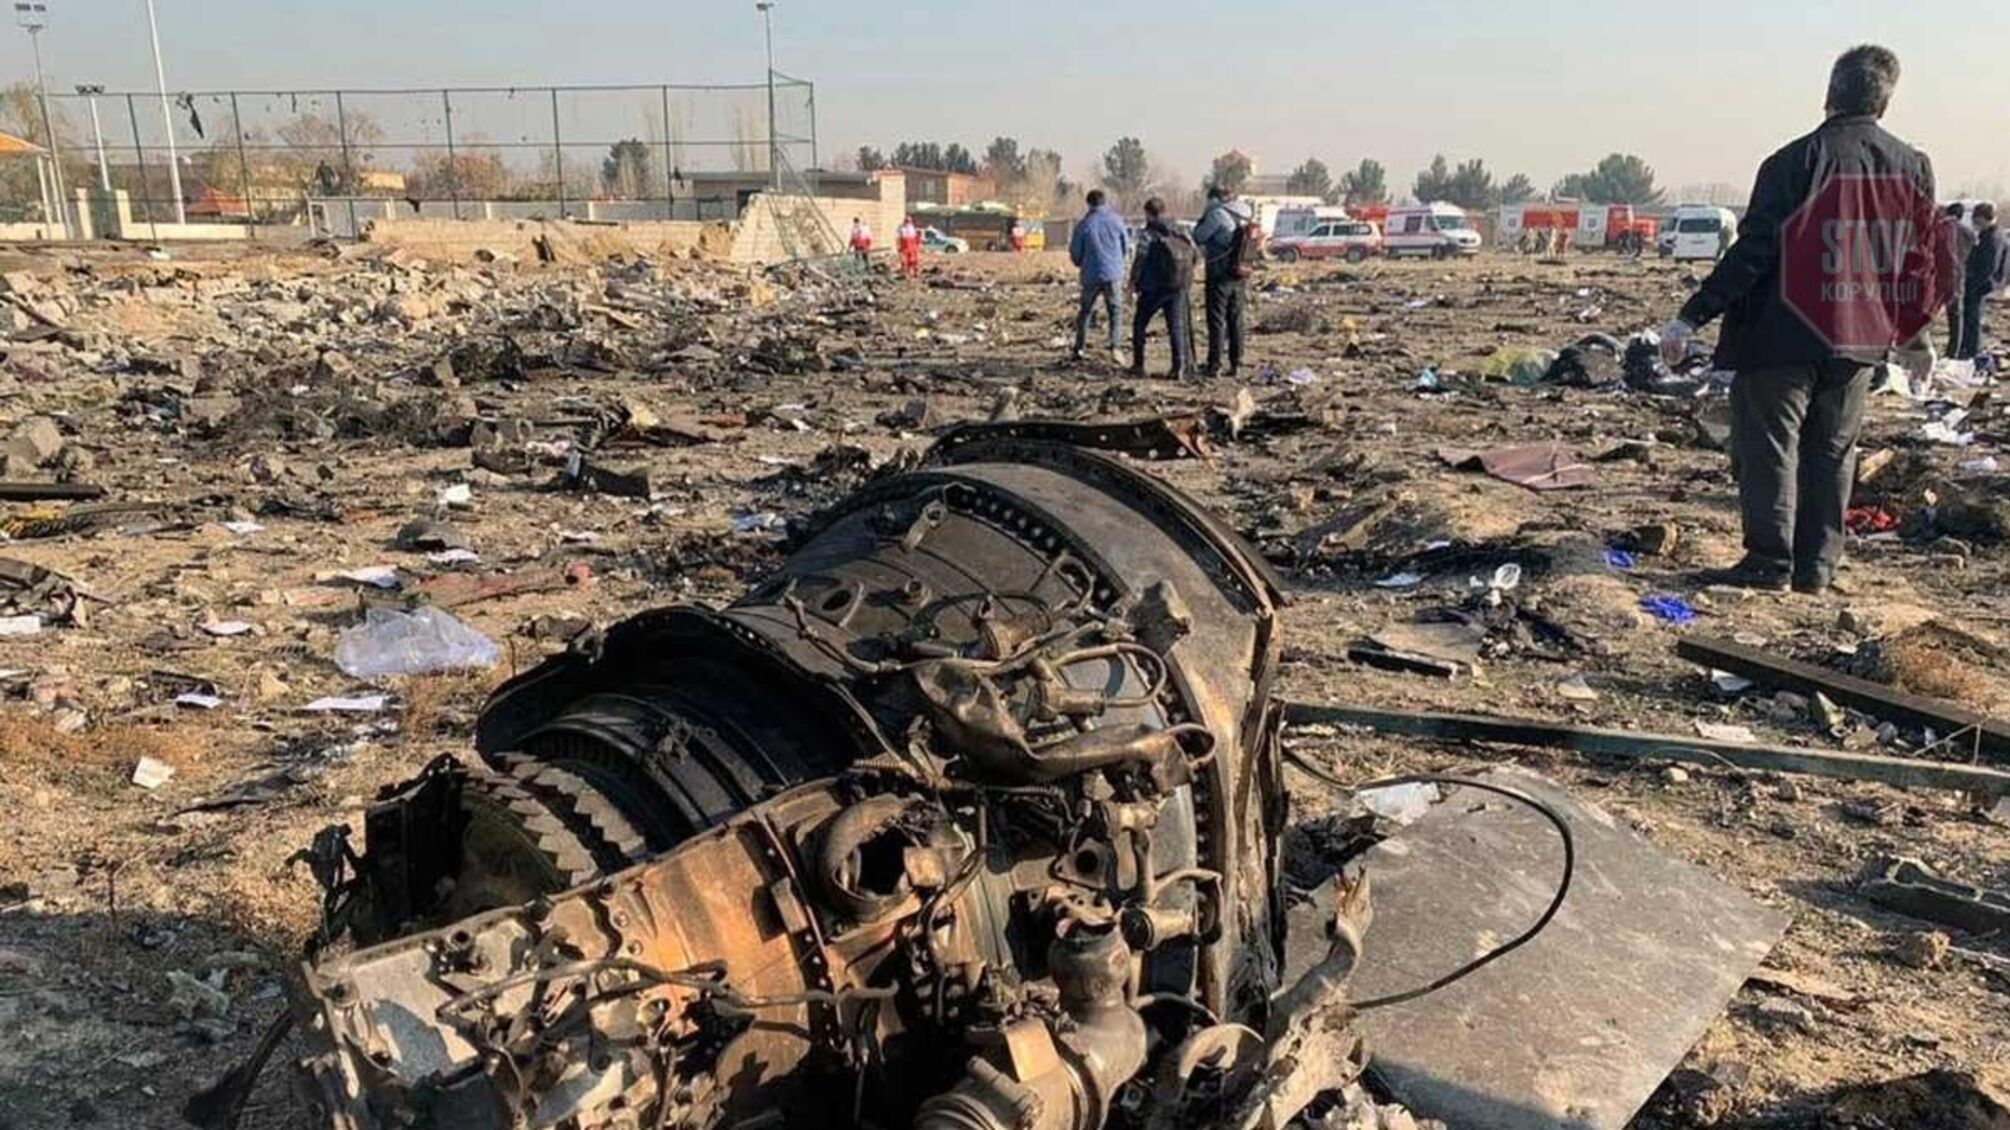 Йорданські ЗМІ назвали причину катастрофи літака рейсу МАУ PS 752: деталі